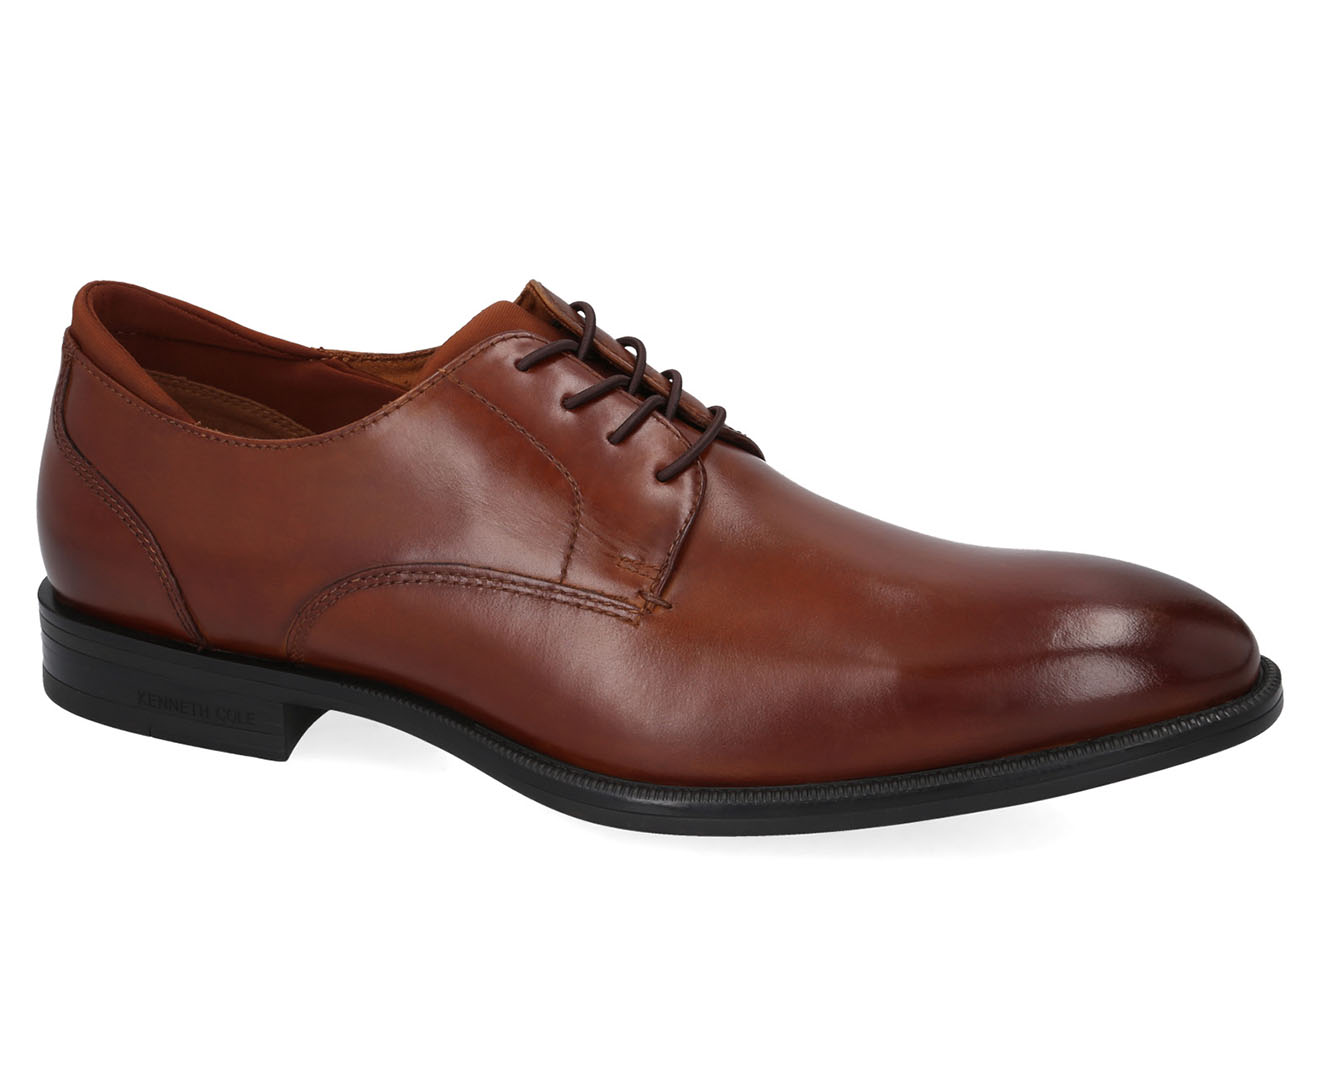 Kenneth Cole Men's Futurepod Lace-Up Oxford Shoes - Cognac | Catch.com.au